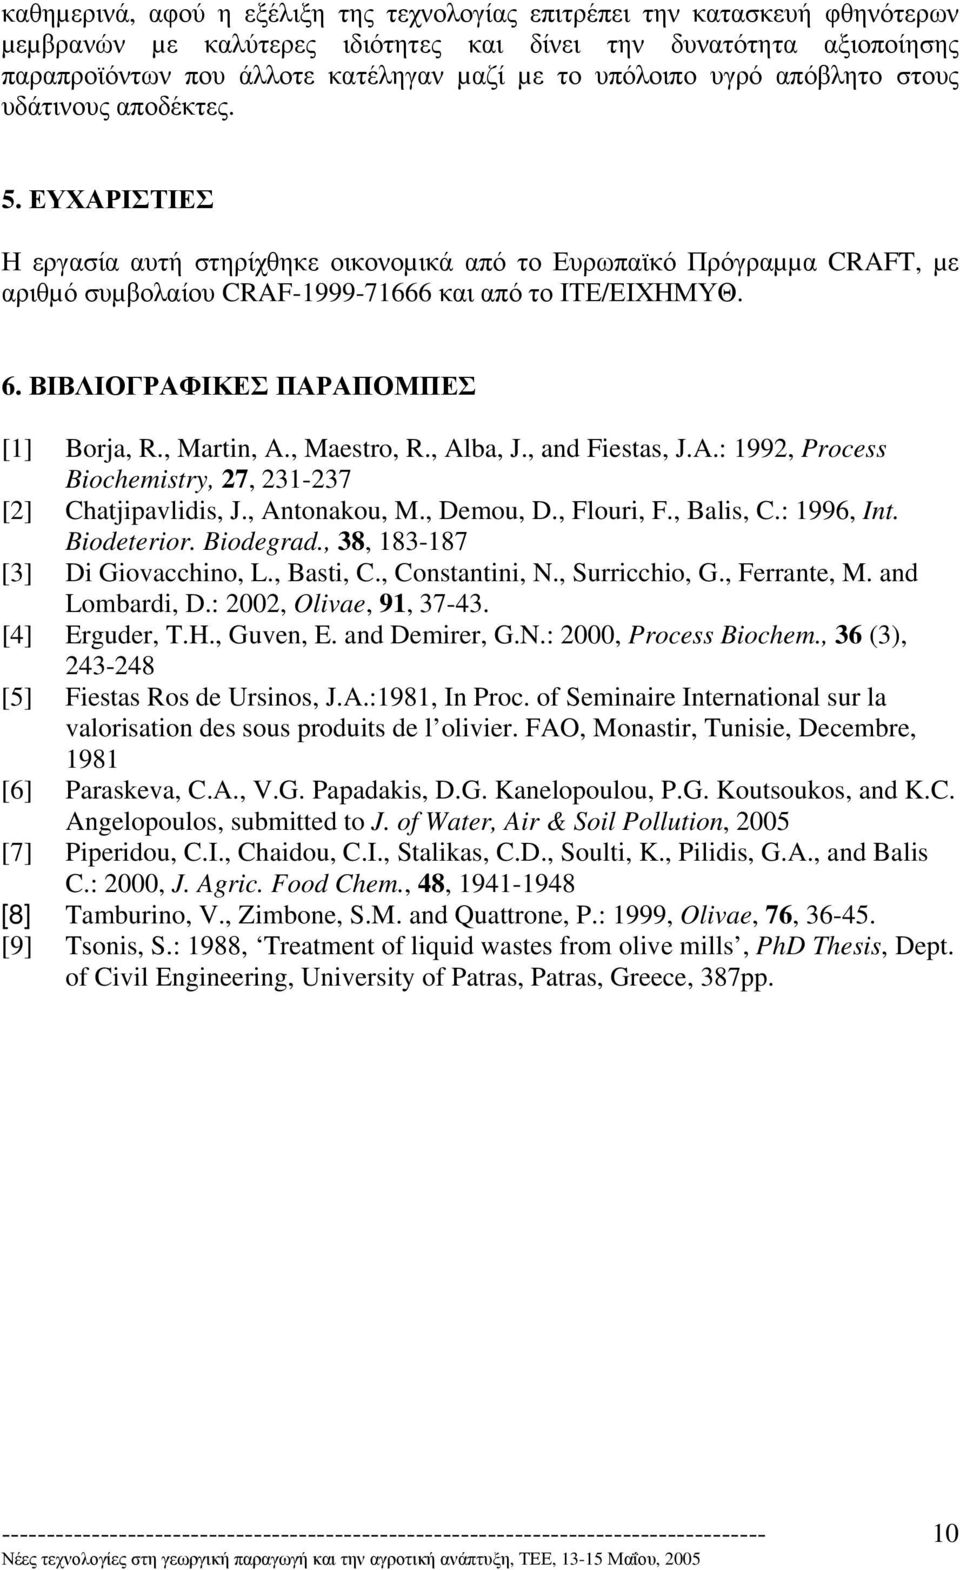 ΒΙΒΛΙΟΓΡΑΦΙΚΕΣ ΠΑΡΑΠΟΜΠΕΣ [1] Borja, R., Martin, A., Maestro, R., Alba, J., and Fiestas, J.A.: 1992, Process Biochemistry, 27, 231-237 [2] Chatjipavlidis, J., Antonakou, M., Demou, D., Flouri, F.